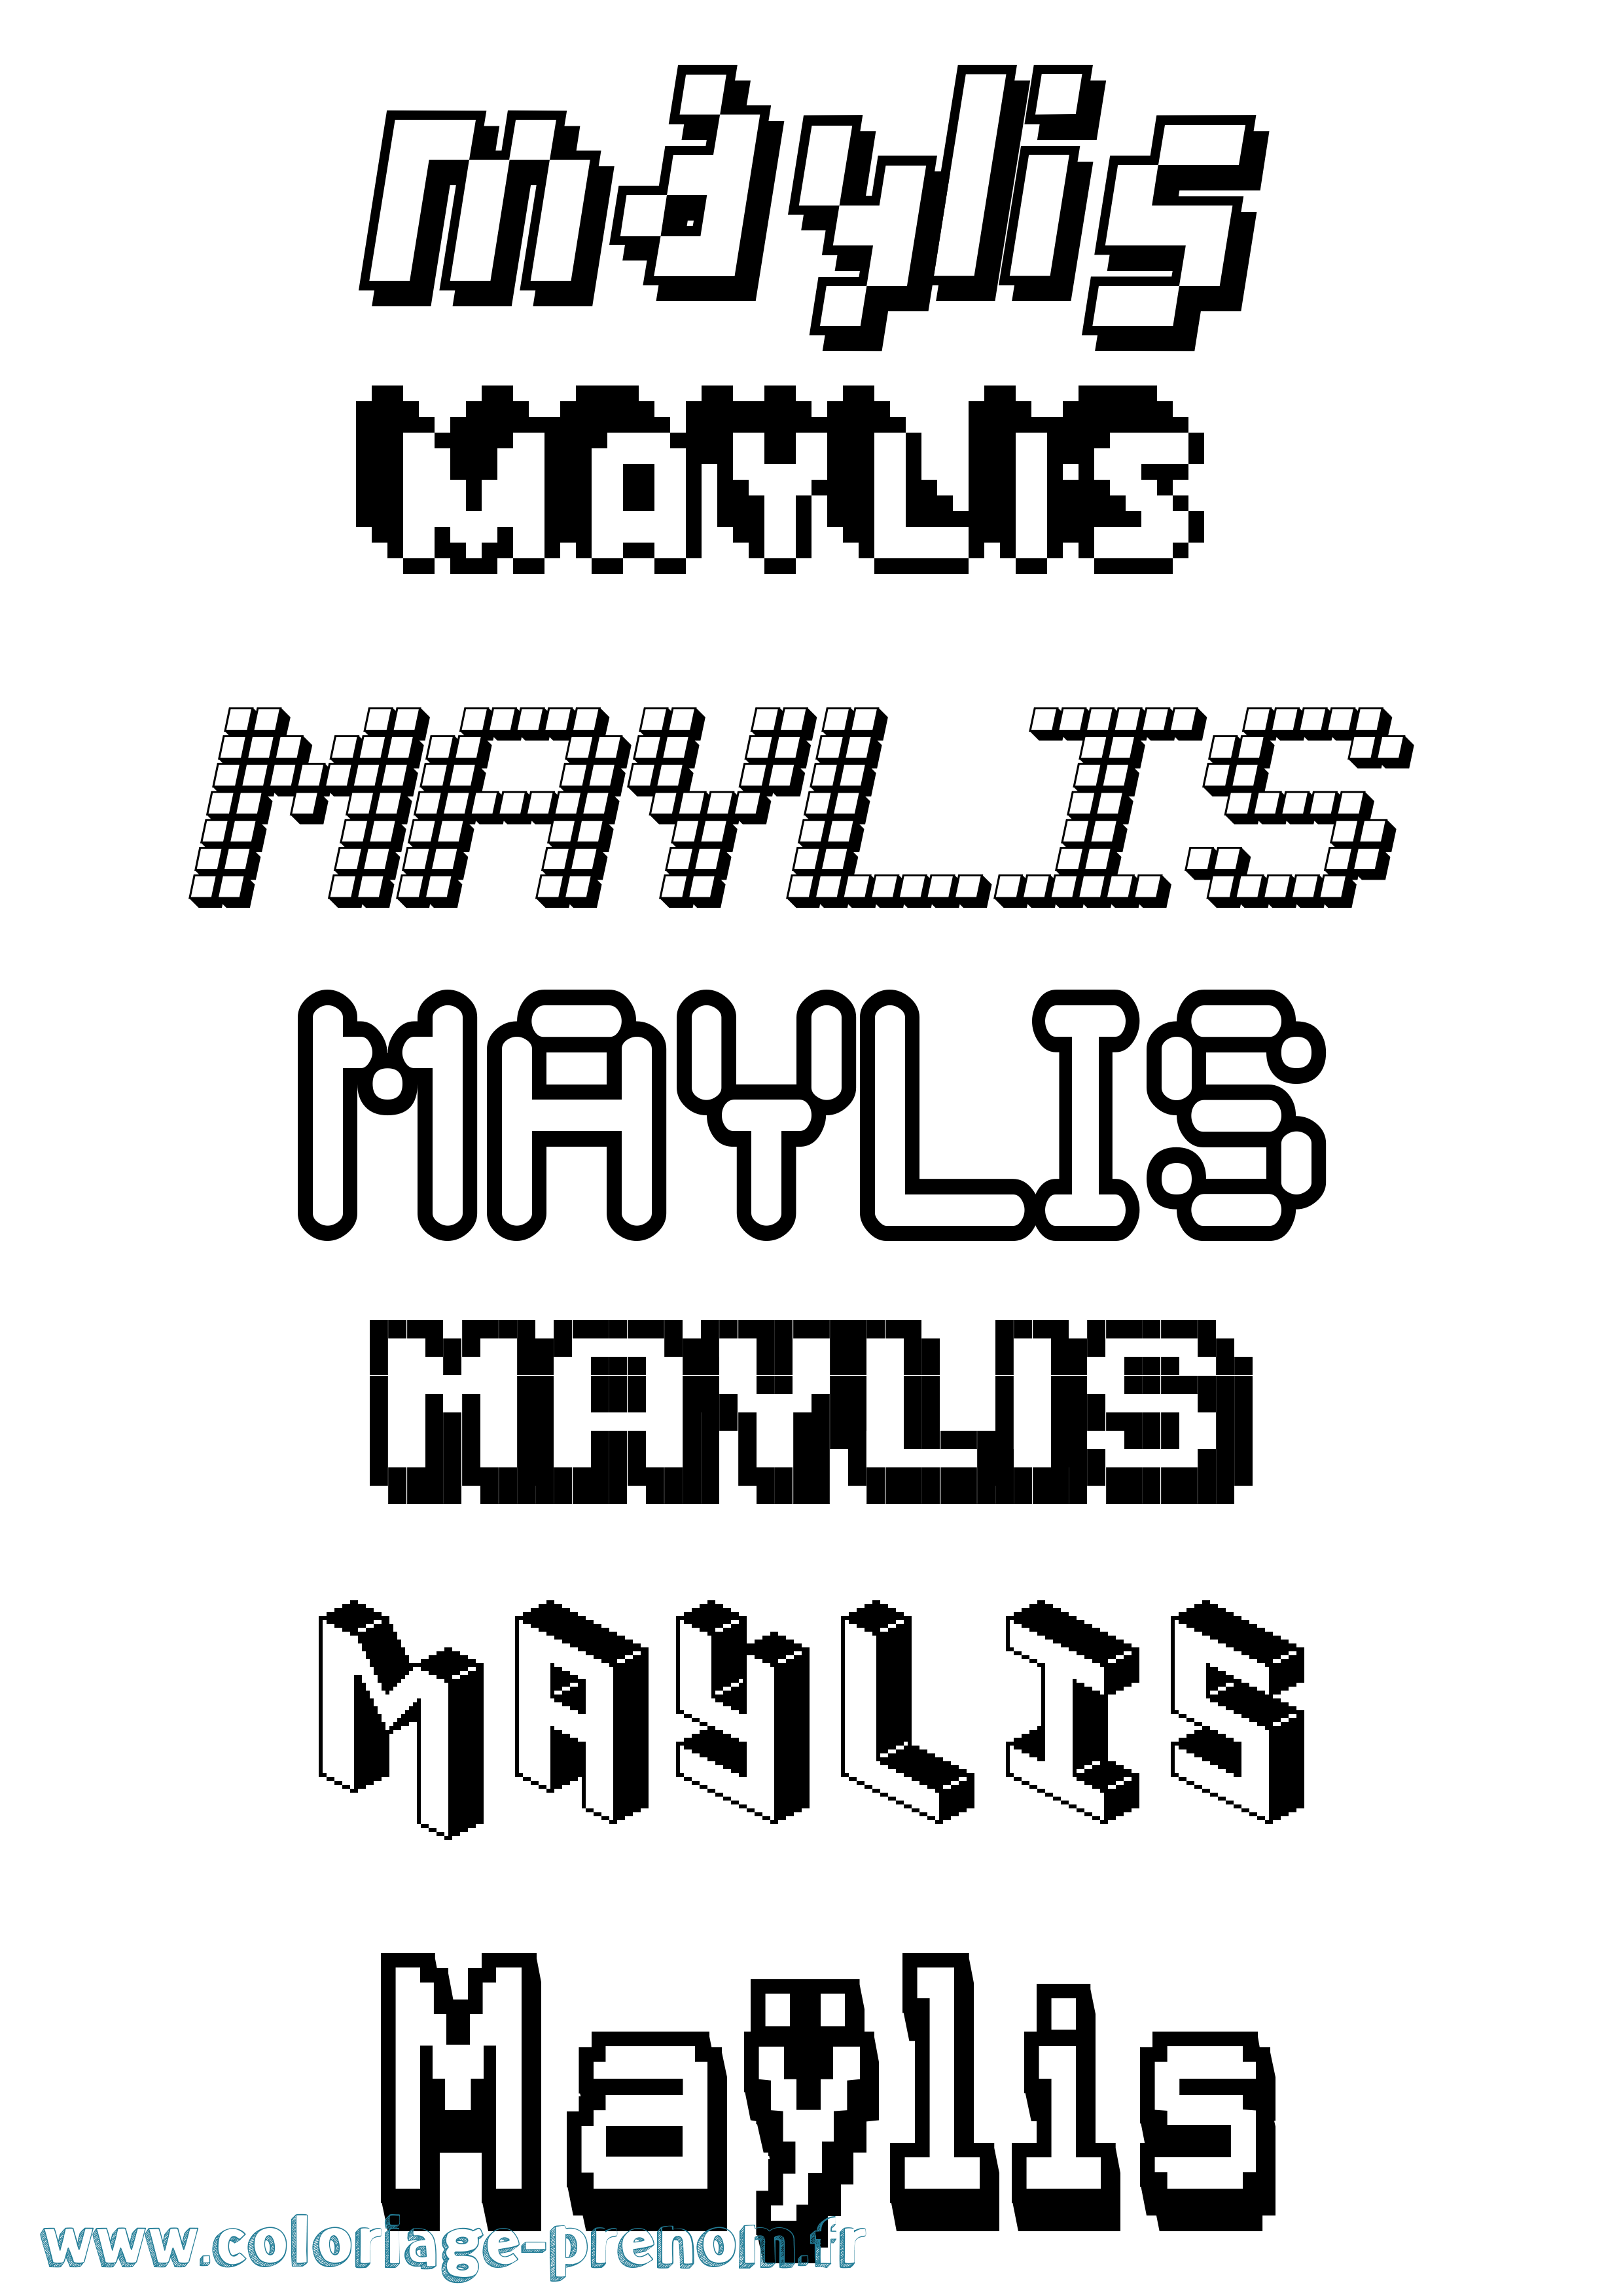 Coloriage prénom Maÿlis Pixel